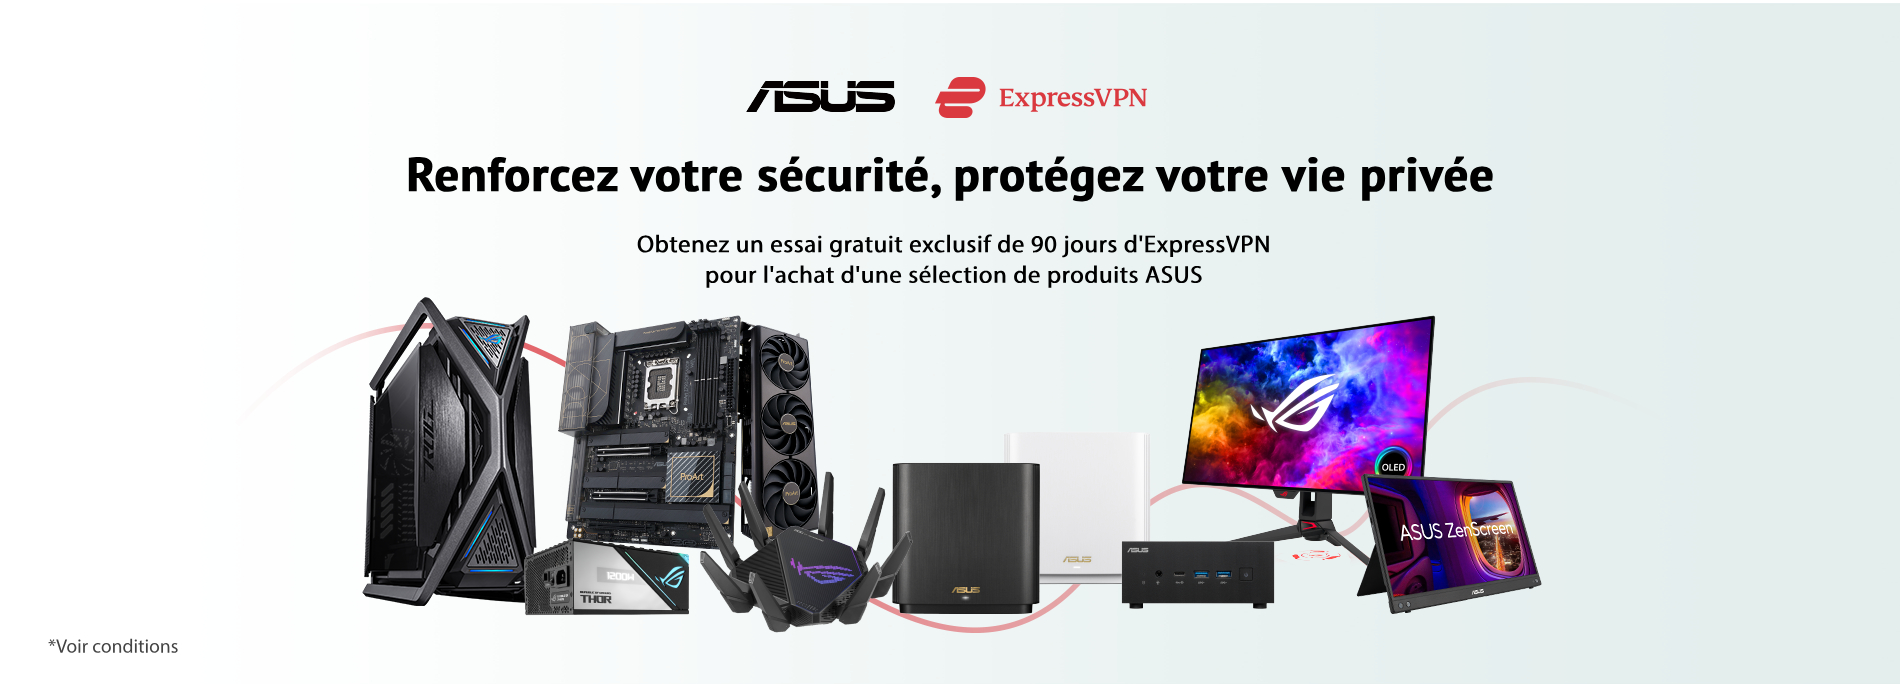 ASUS x ExpressVPN - Renforcez votre sécurité, protégez votre vie privée (région EMEA)